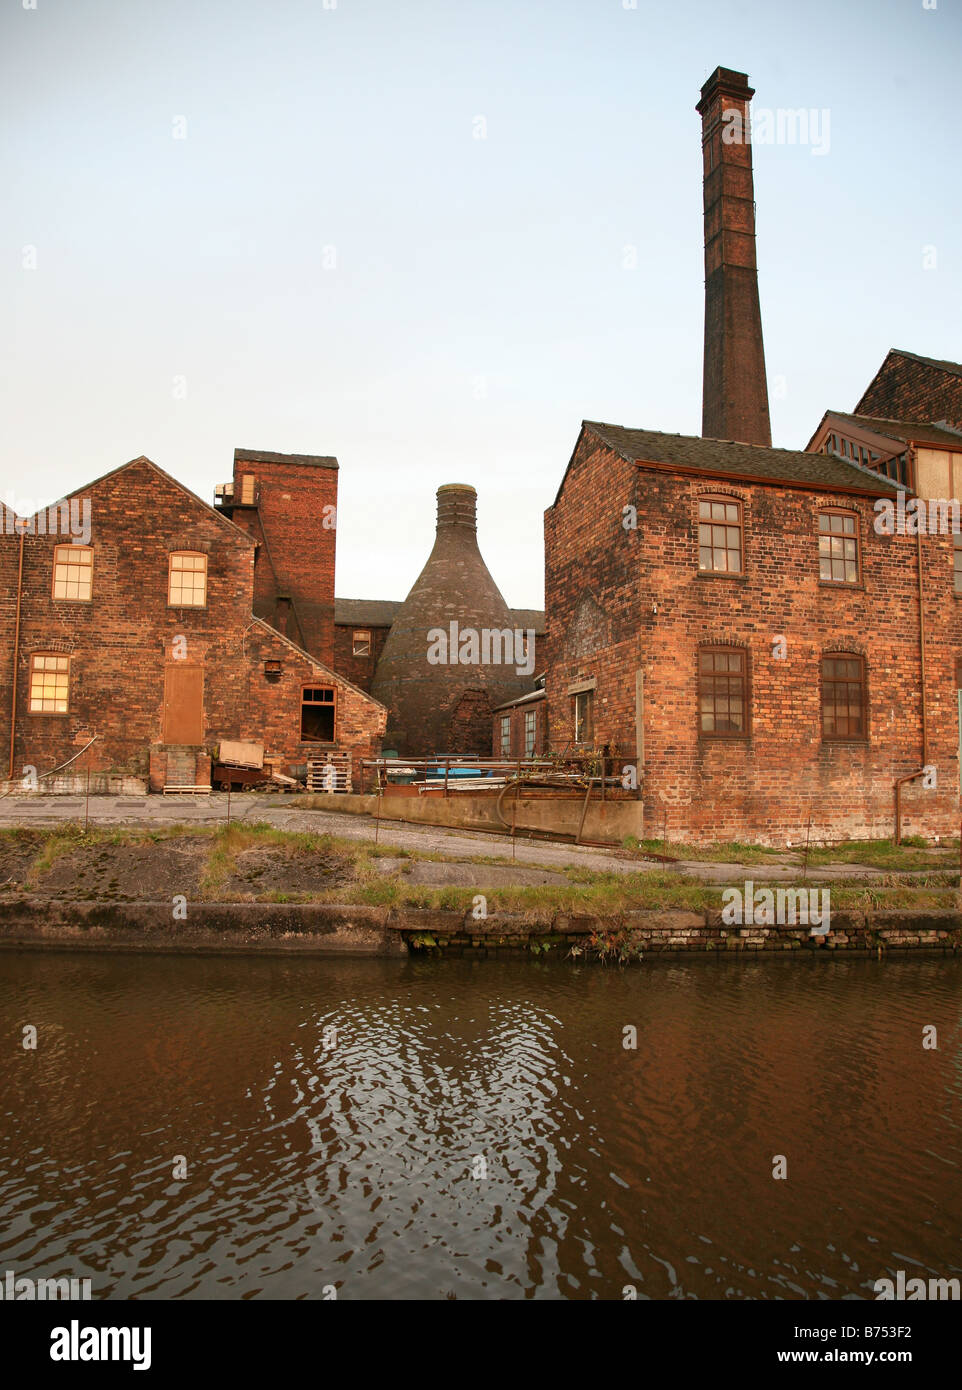 Middleport pottery factory Stoke-on-Trent, le personnel montrant une bouteille four ou four également appelée potbank à côté du canal Banque D'Images